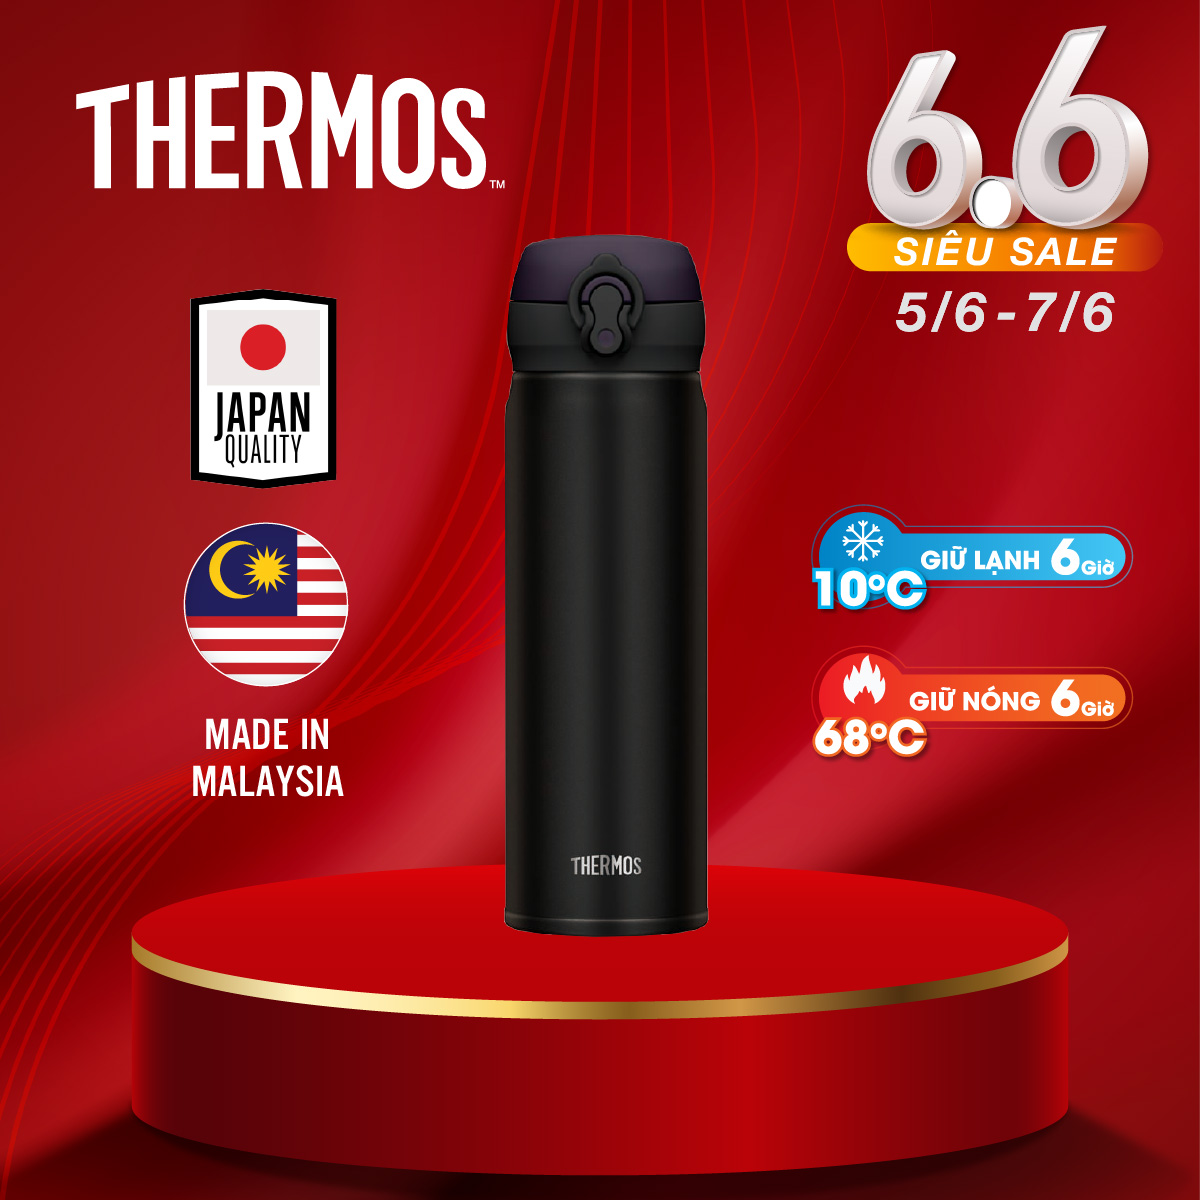 Bình giữ nhiệt Nhật Bản Thermos nút bấm. Hàng chính hãng sản xuất tại Malaysia. Bình giữ nhiệt Thermos trọng lượng siêu nhẹ khả năng giữ nhiệt ưu việt. Bảo hành 12 tháng.